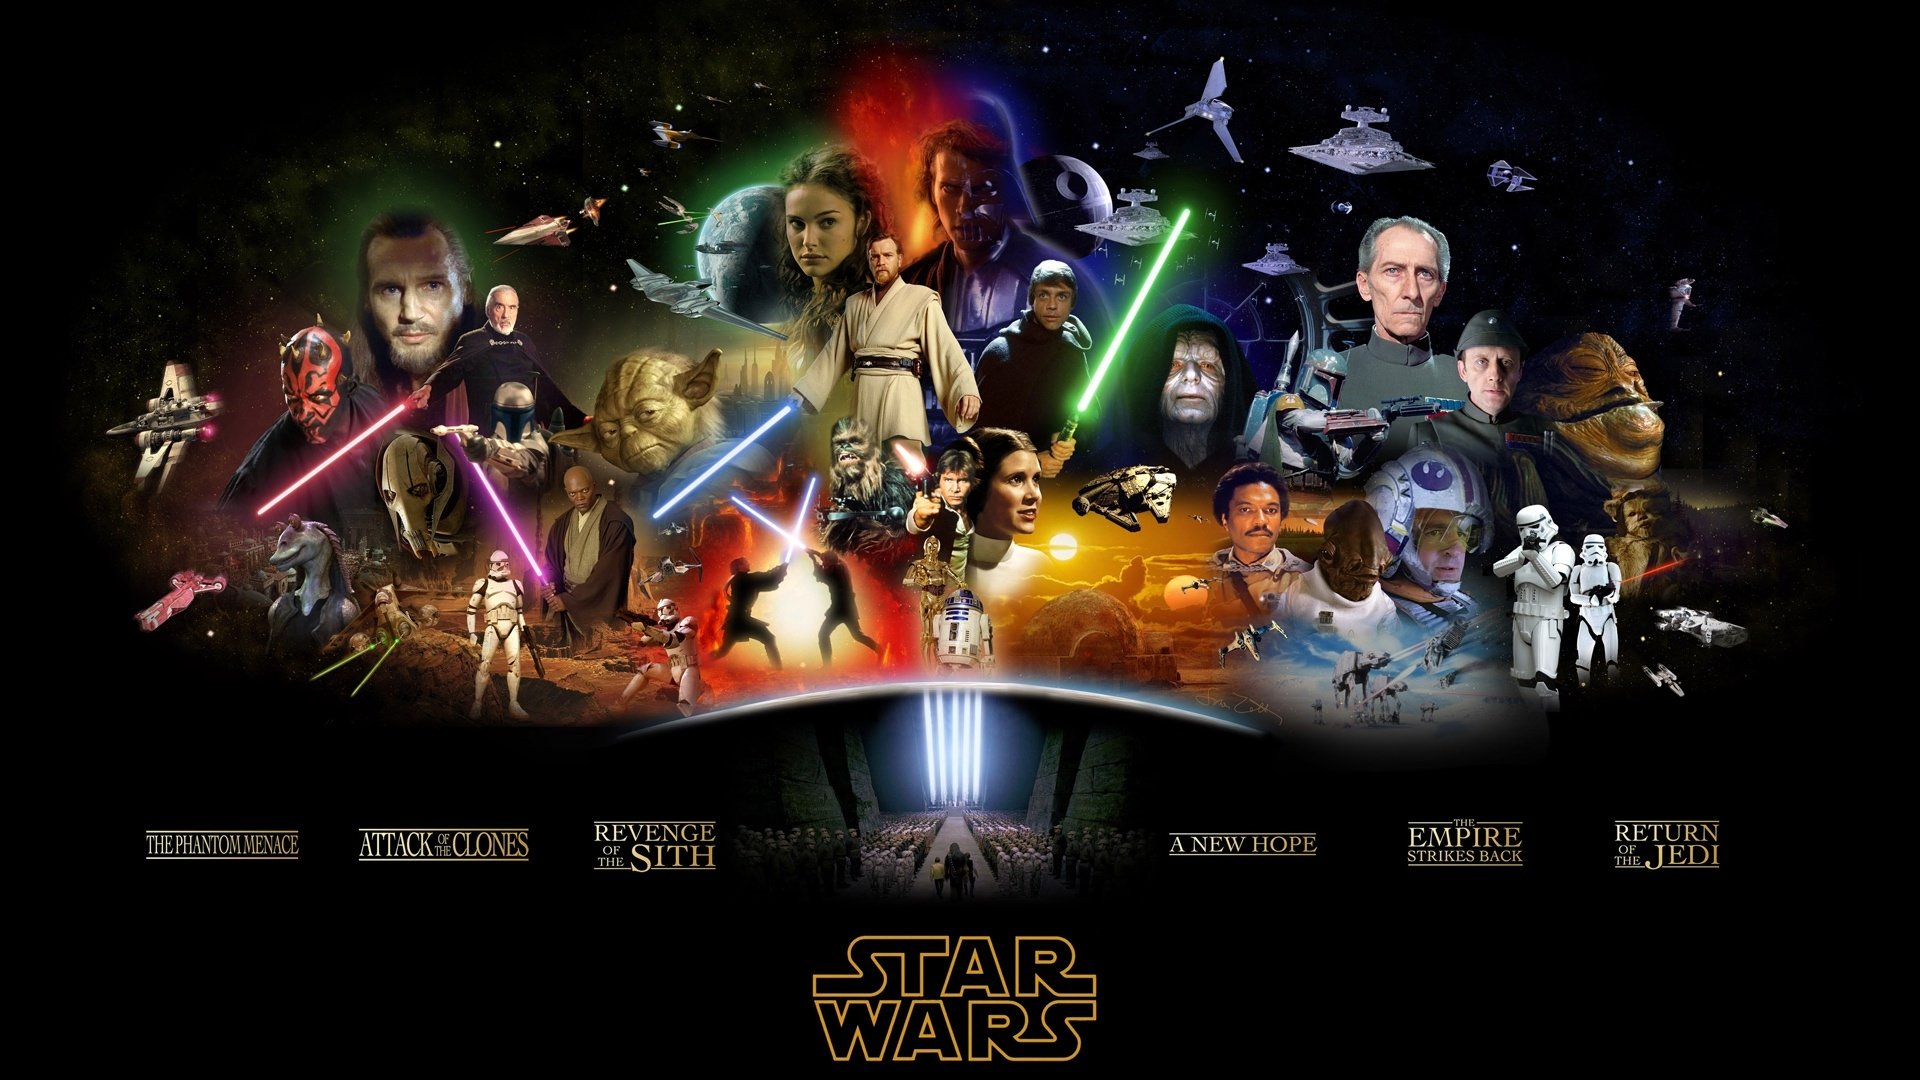 Star Wars v chronologickom poradí